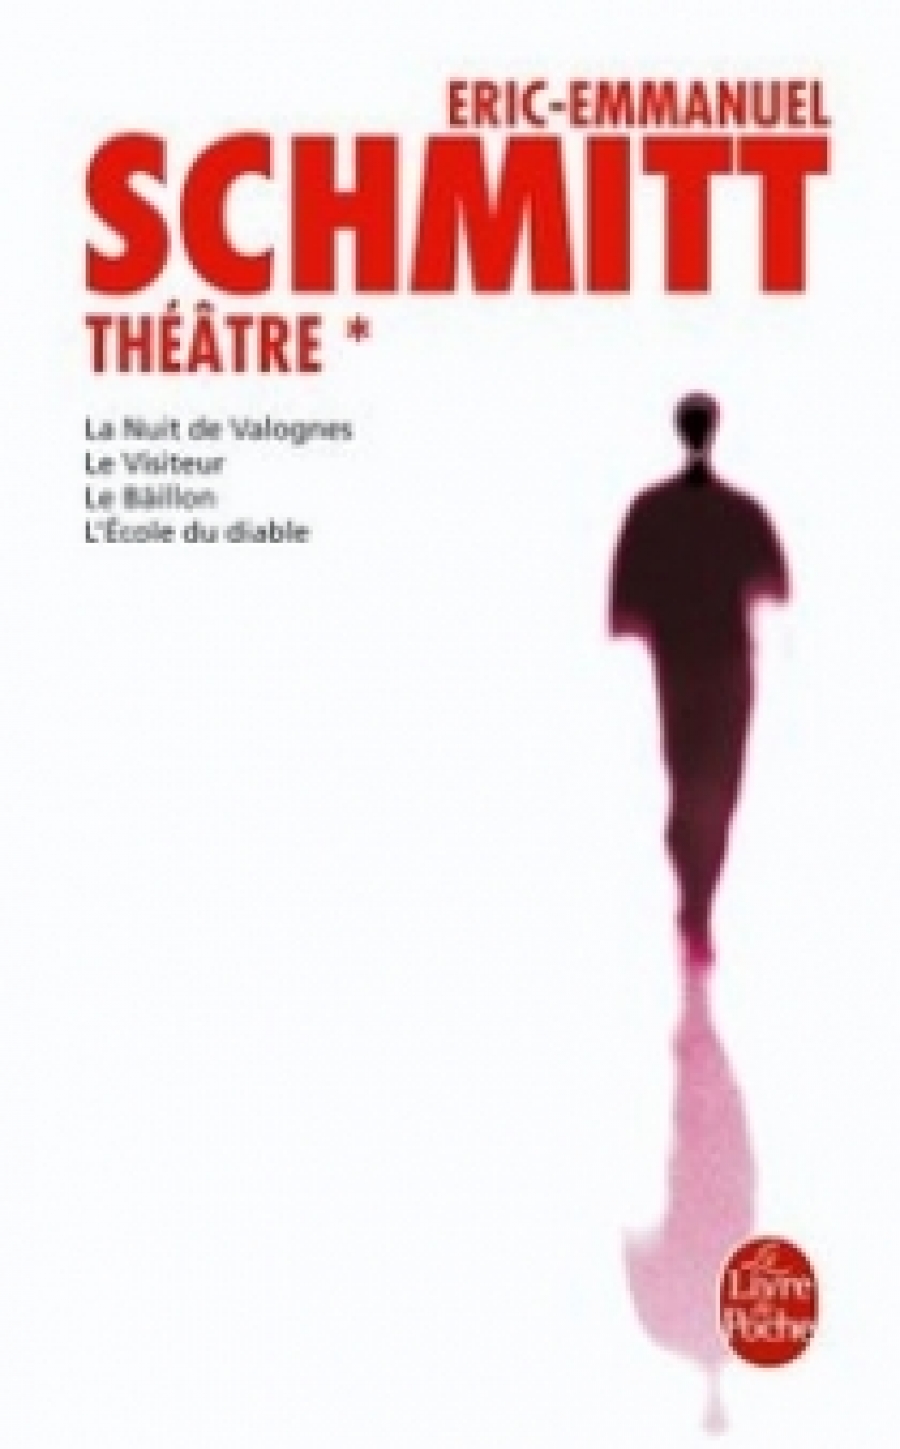 Eric-Emmanuel S. Theatre 1 (La Nuit de Valognes, le visiteur, le baillon, l'ecole du diable) 